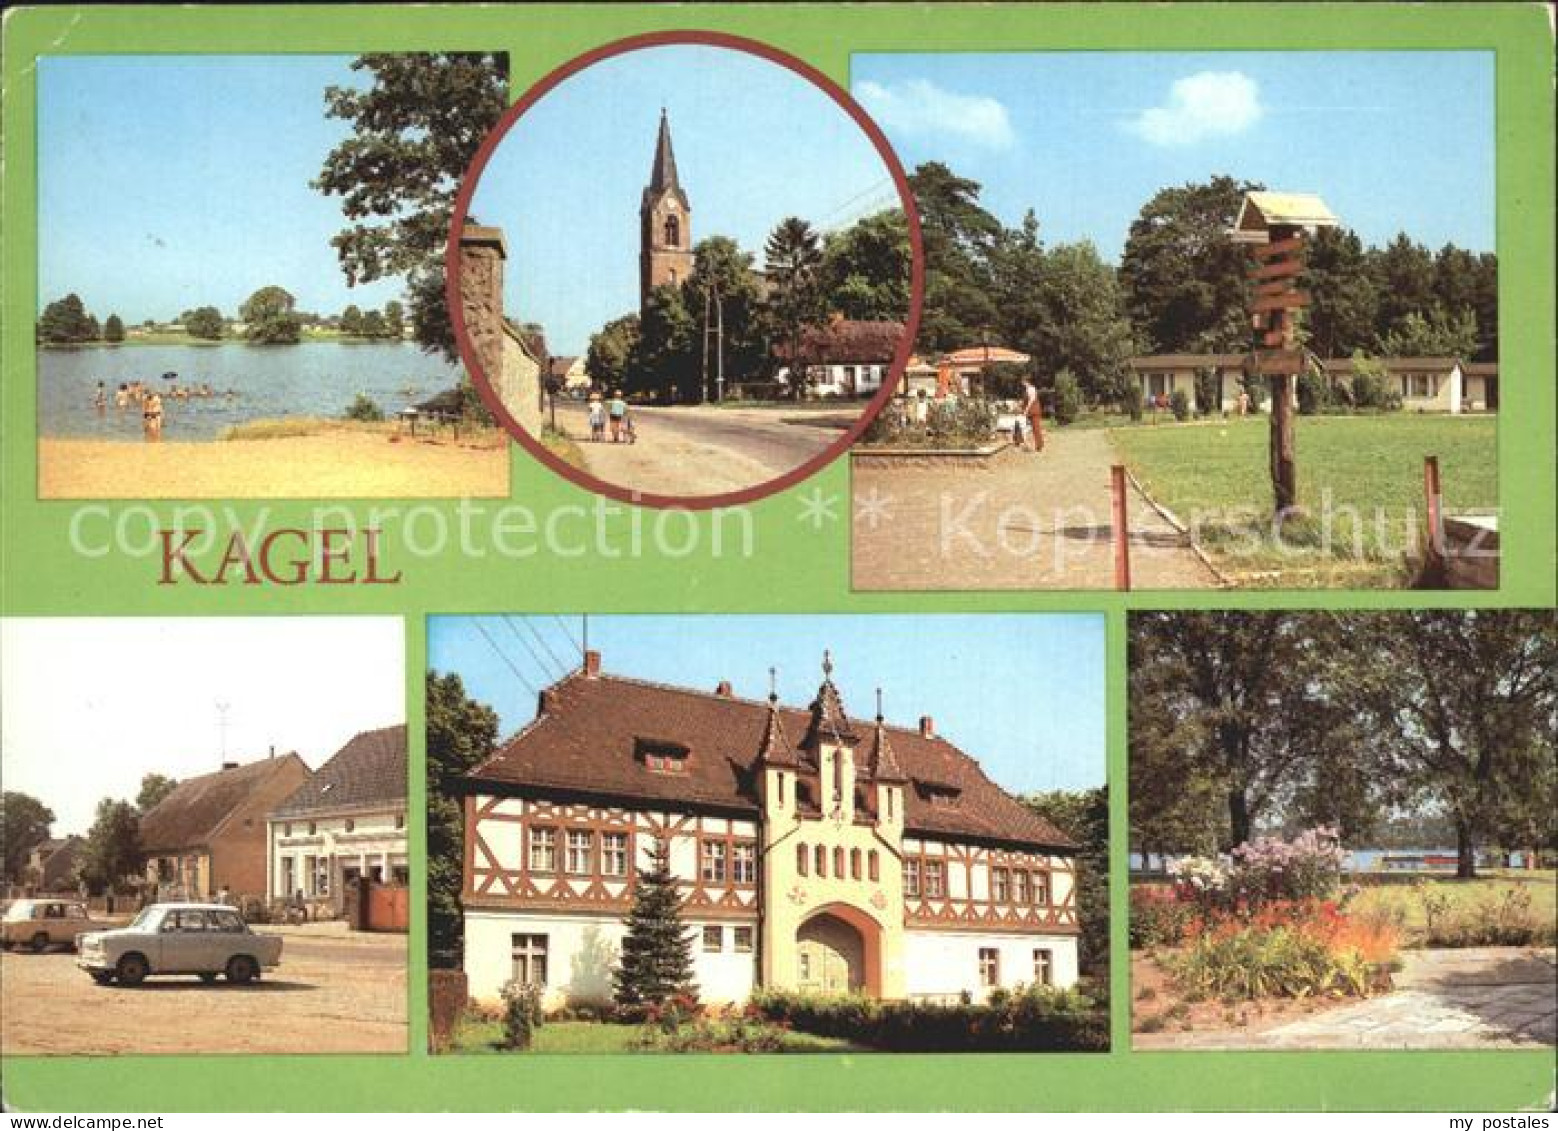 72332187 Kagel Bauernsee Kirche Naherholungszentrum Dorfstrasse Kinderferienlage - Grünheide